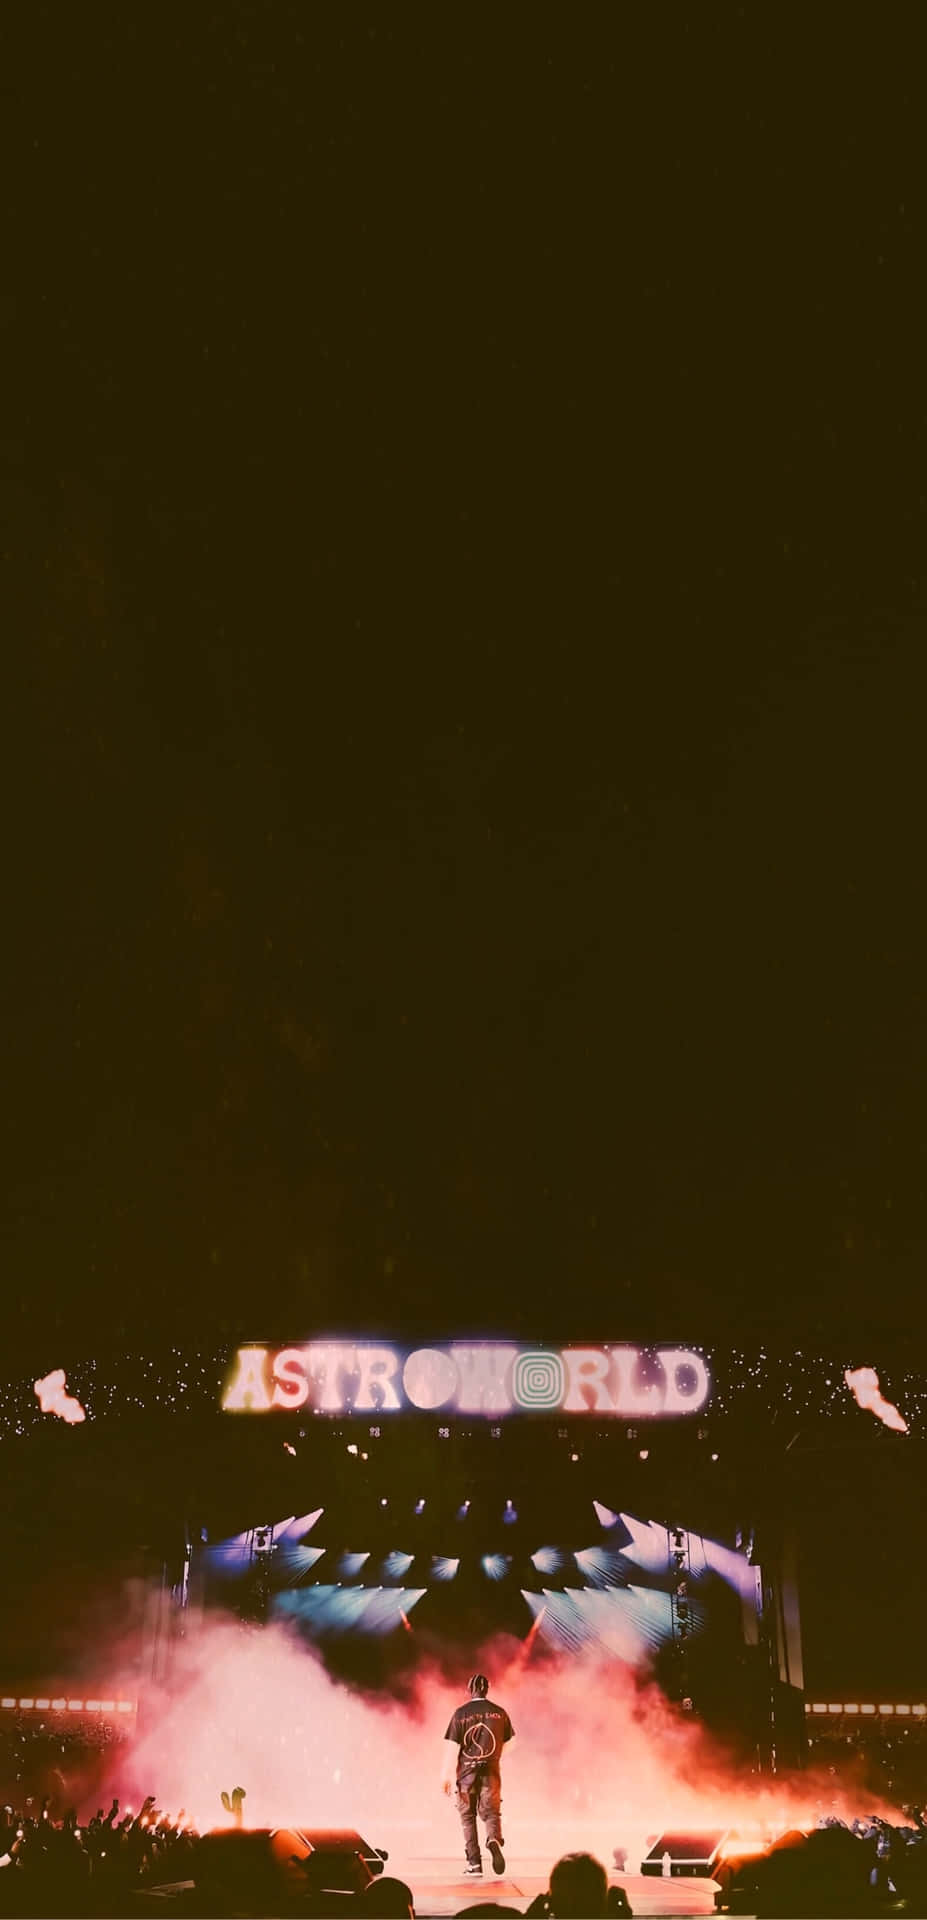 Fans hylder efter en optræden for Travis Scotts Astroworld Tour, under et lit opskydningsrum, der stirrer ud i en nattehimmel tapet. Wallpaper